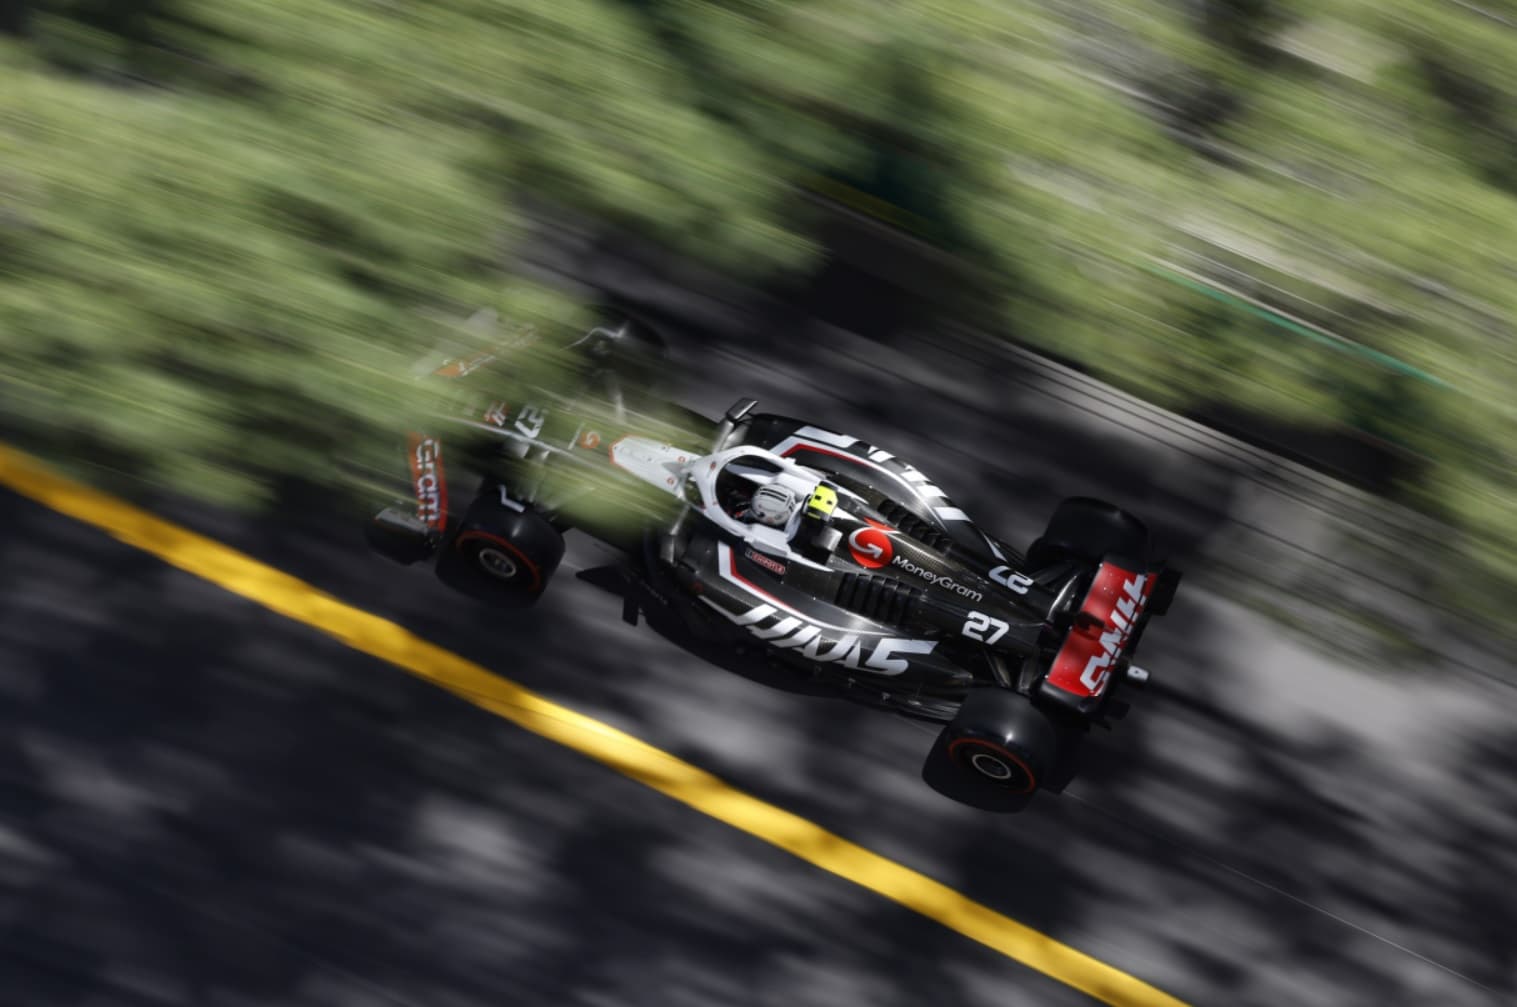 Podwójna dyskwalifikacja grozi Haasowi po kwalifikacjach F1 w Monako